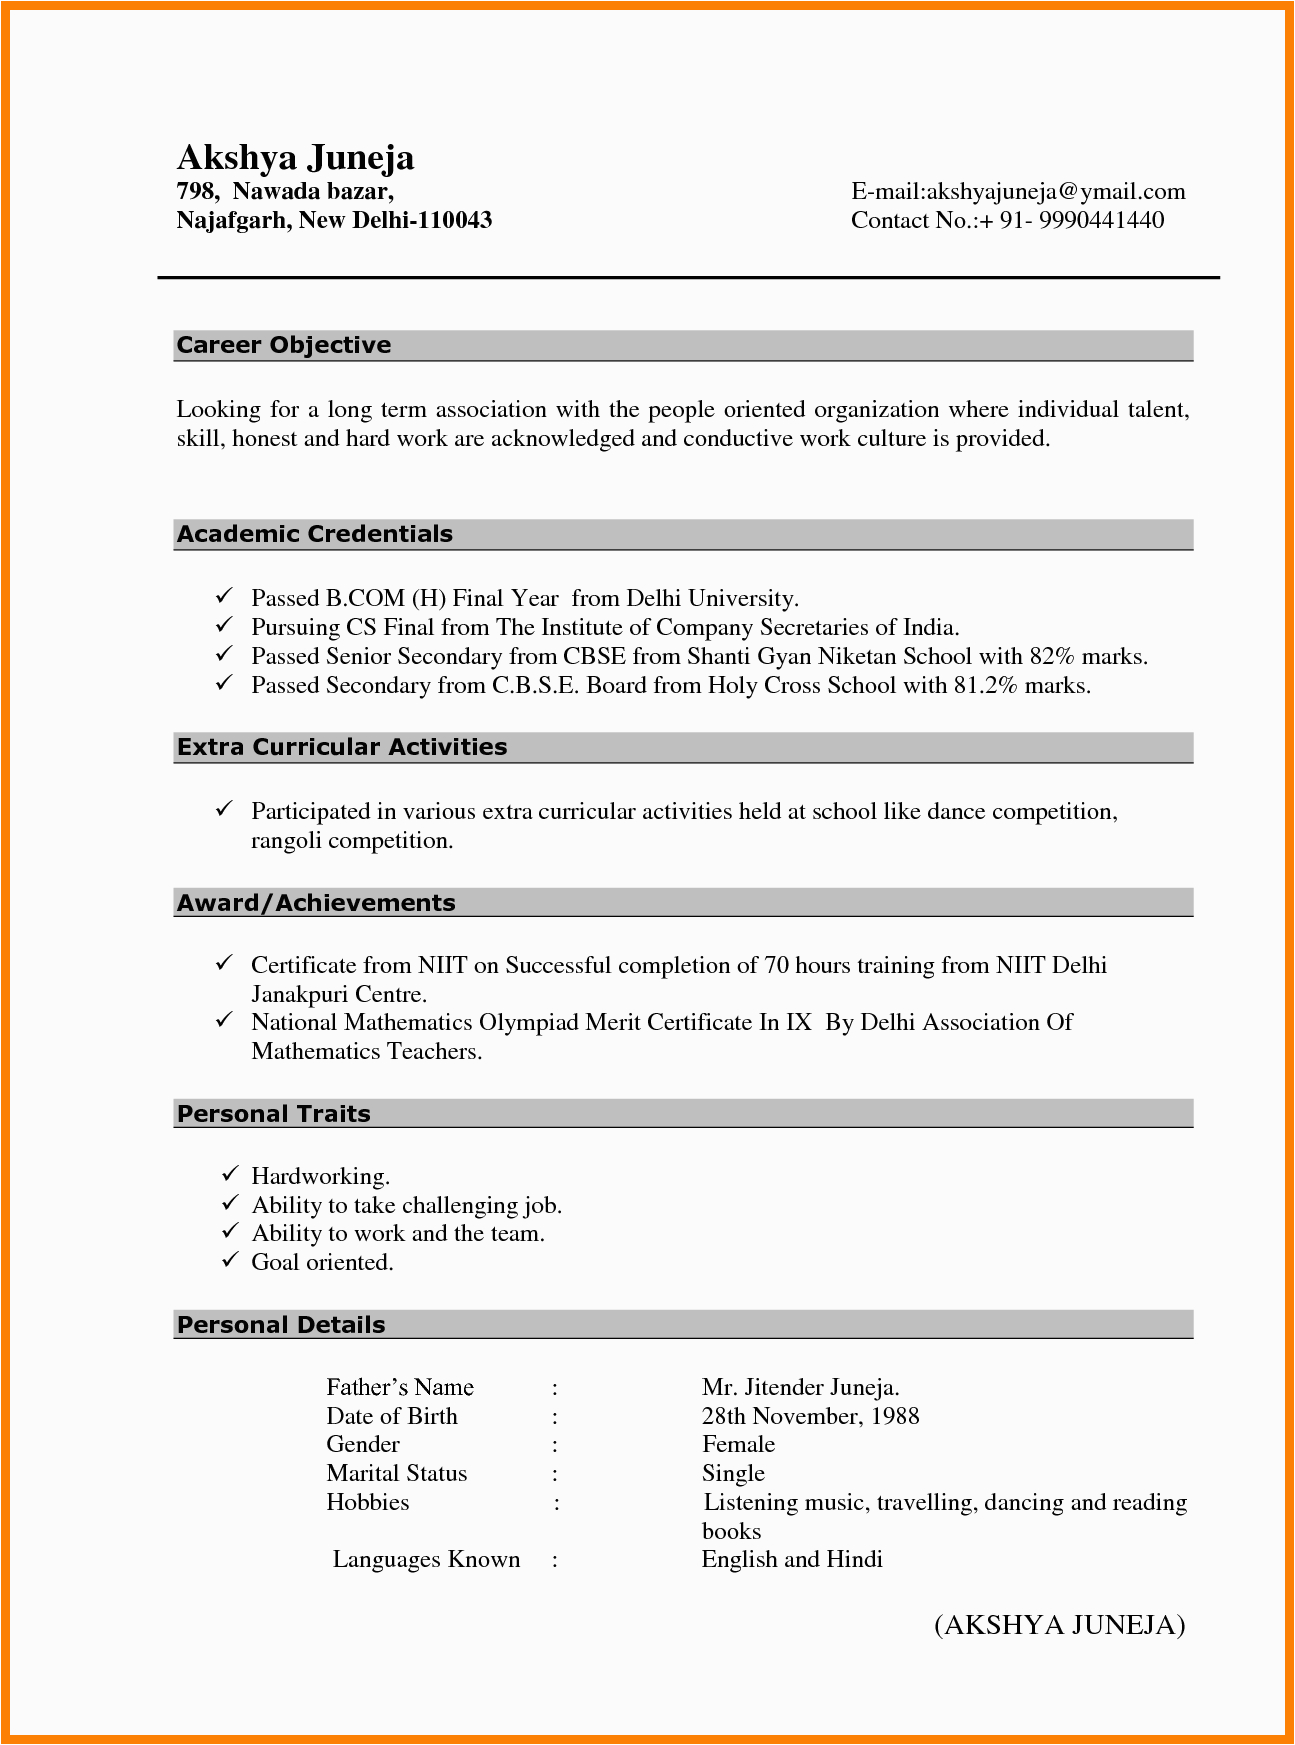 Sample Resume format for Freshers Bcom Freshers B Cv format